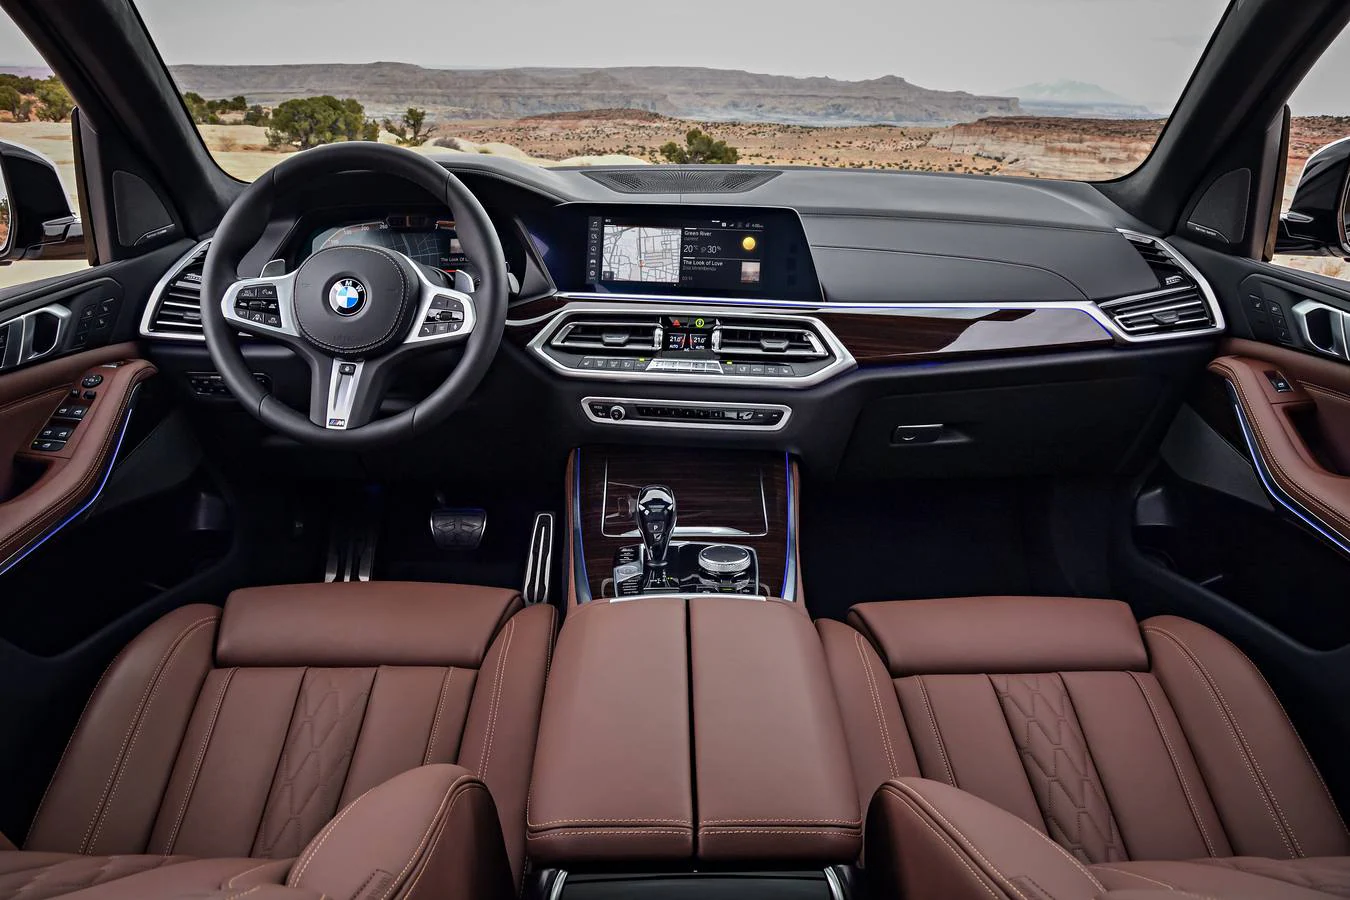 BMW actualiza el X5 con una nueva versión, cuya apariencia es más robusta, con códigos de diseño actualizados y mayor amplitud del habitáculo gracias a unas dimensiones ampliadas. Las nuevas tecnologías representan un paso más en el camino hacia la conducción autónoma.